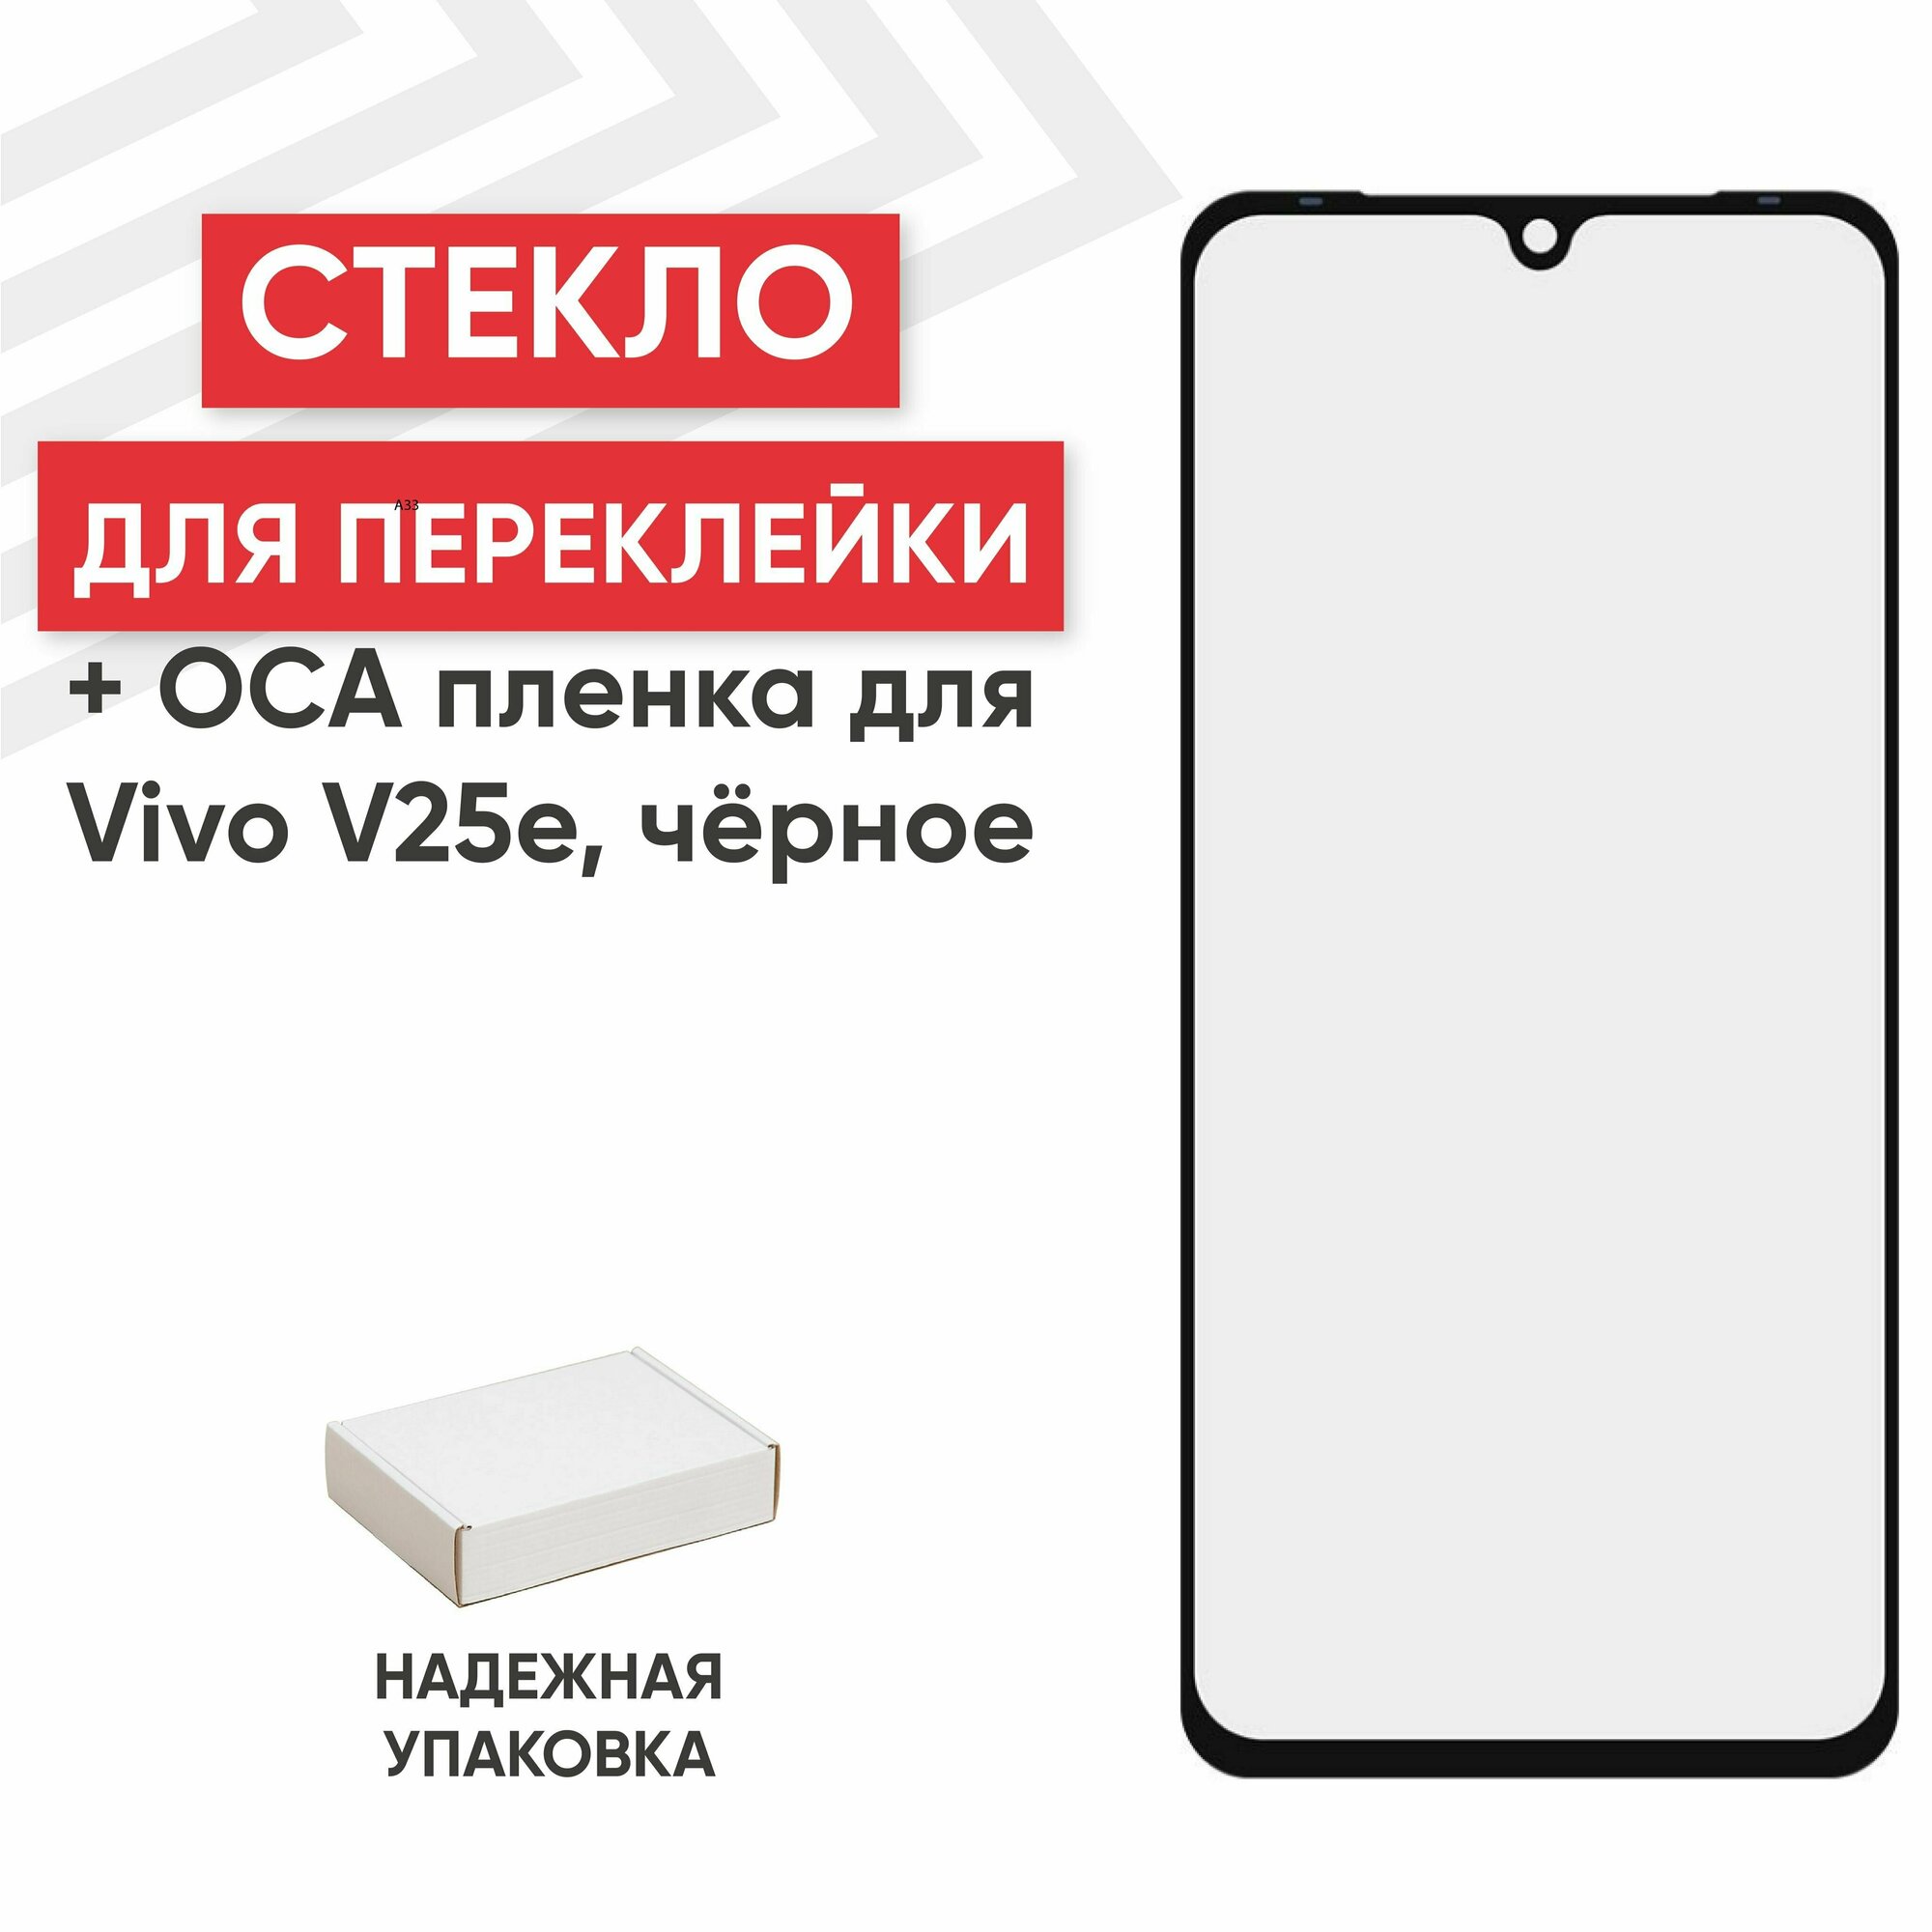 Стекло переклейки дисплея c OCA пленкой для мобильного телефона (смартфона) Vivo V25e, черное